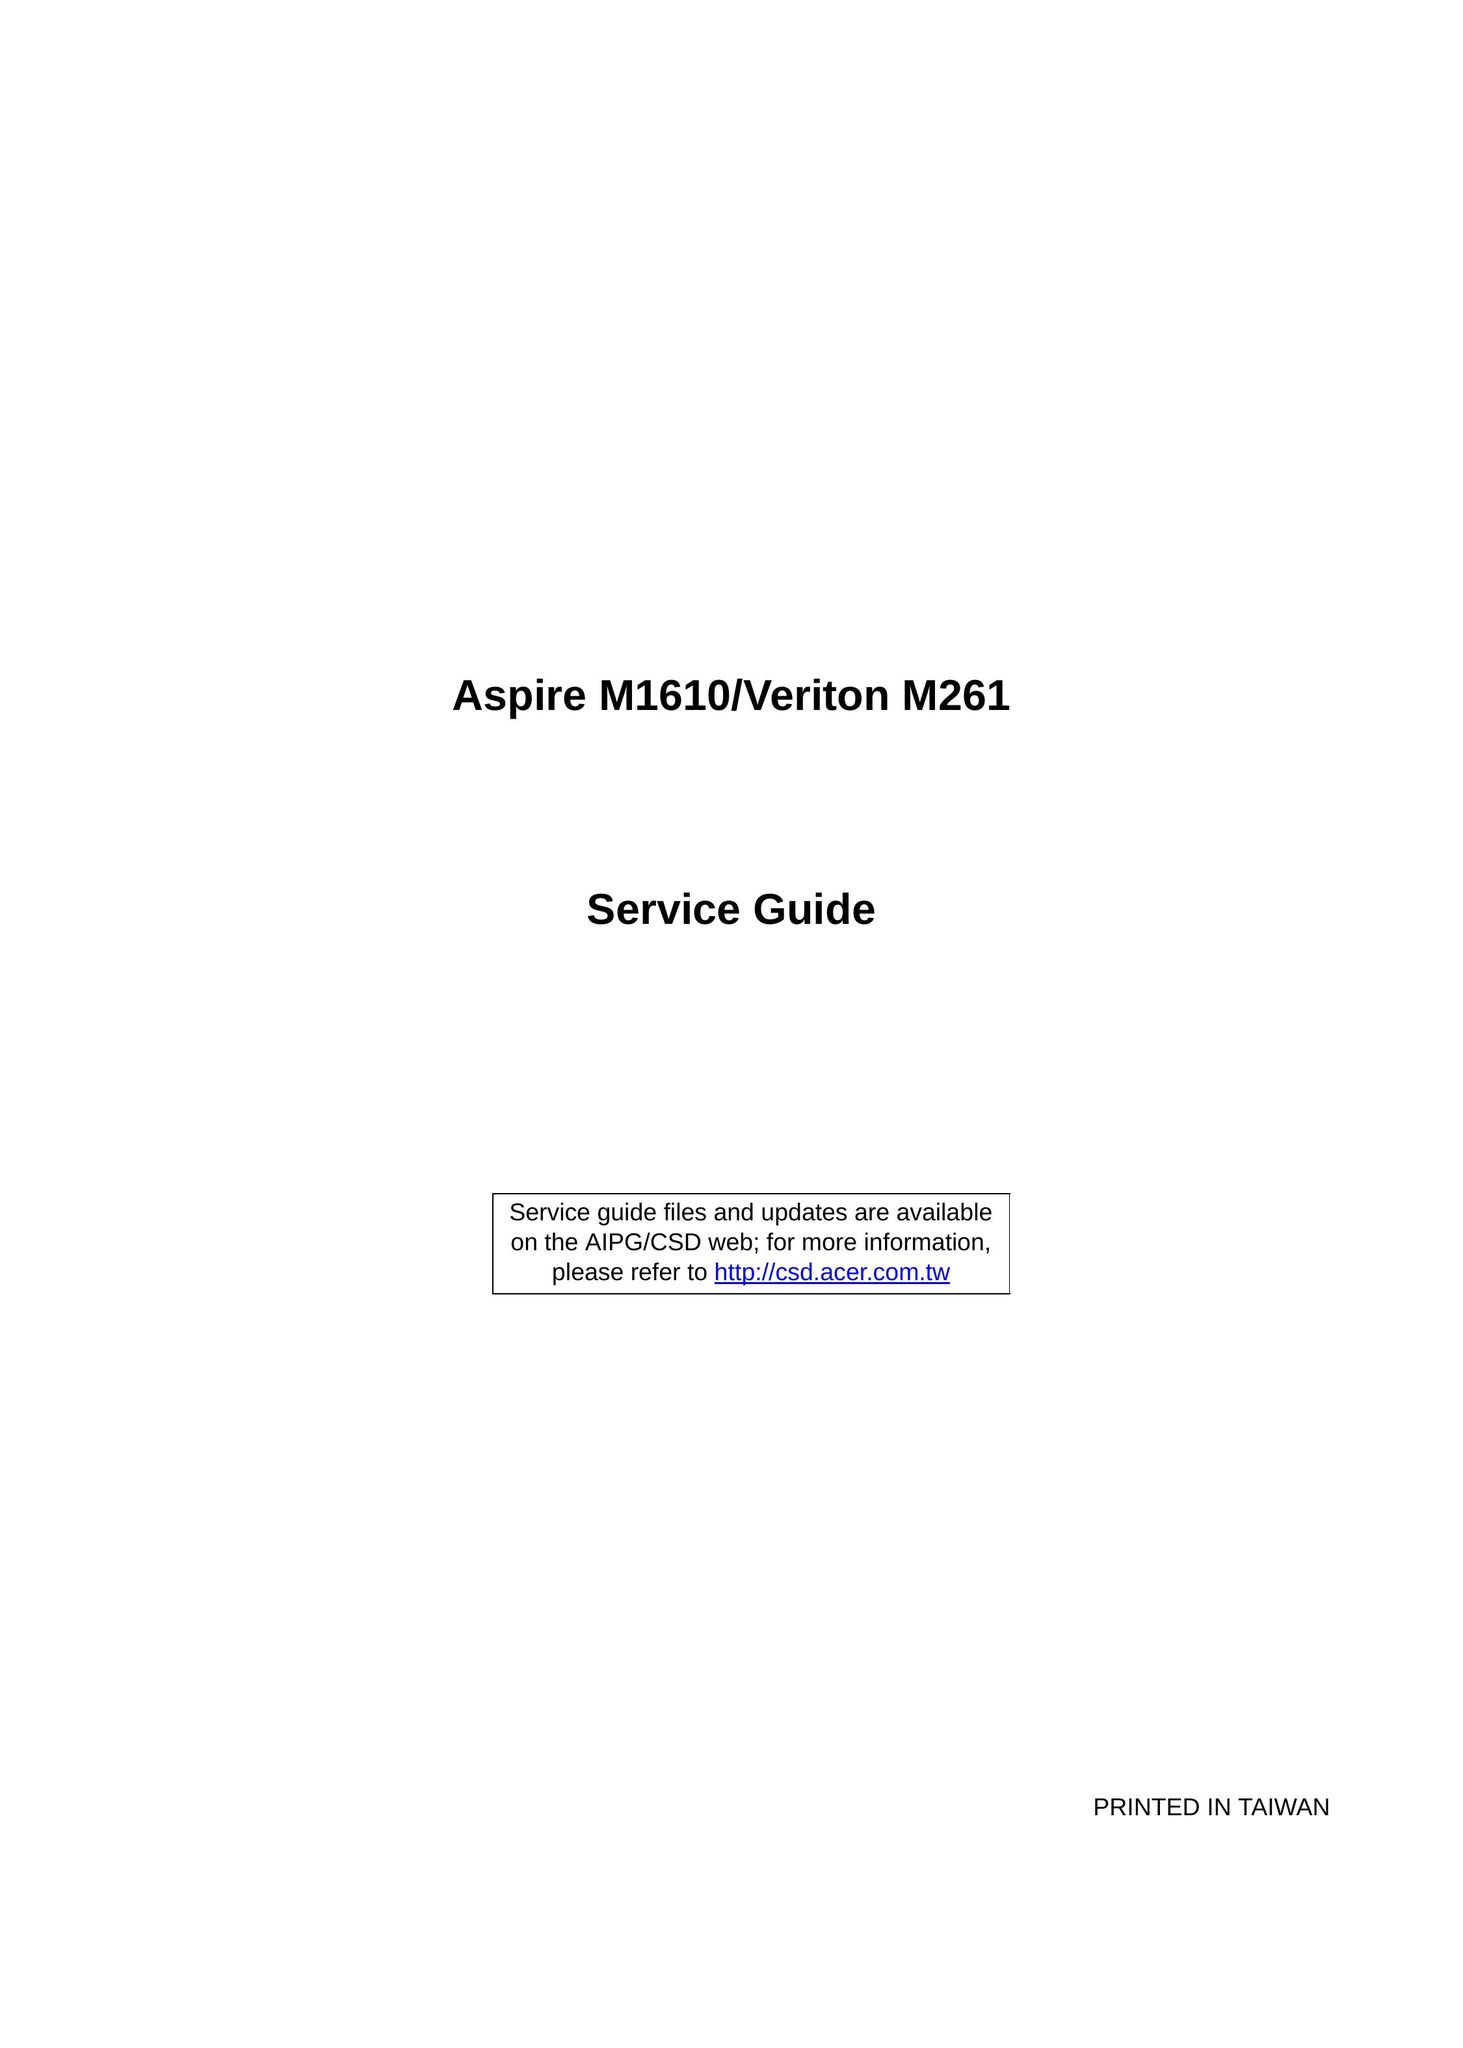 Aspire Digital M1610 Computer Hardware User Manual